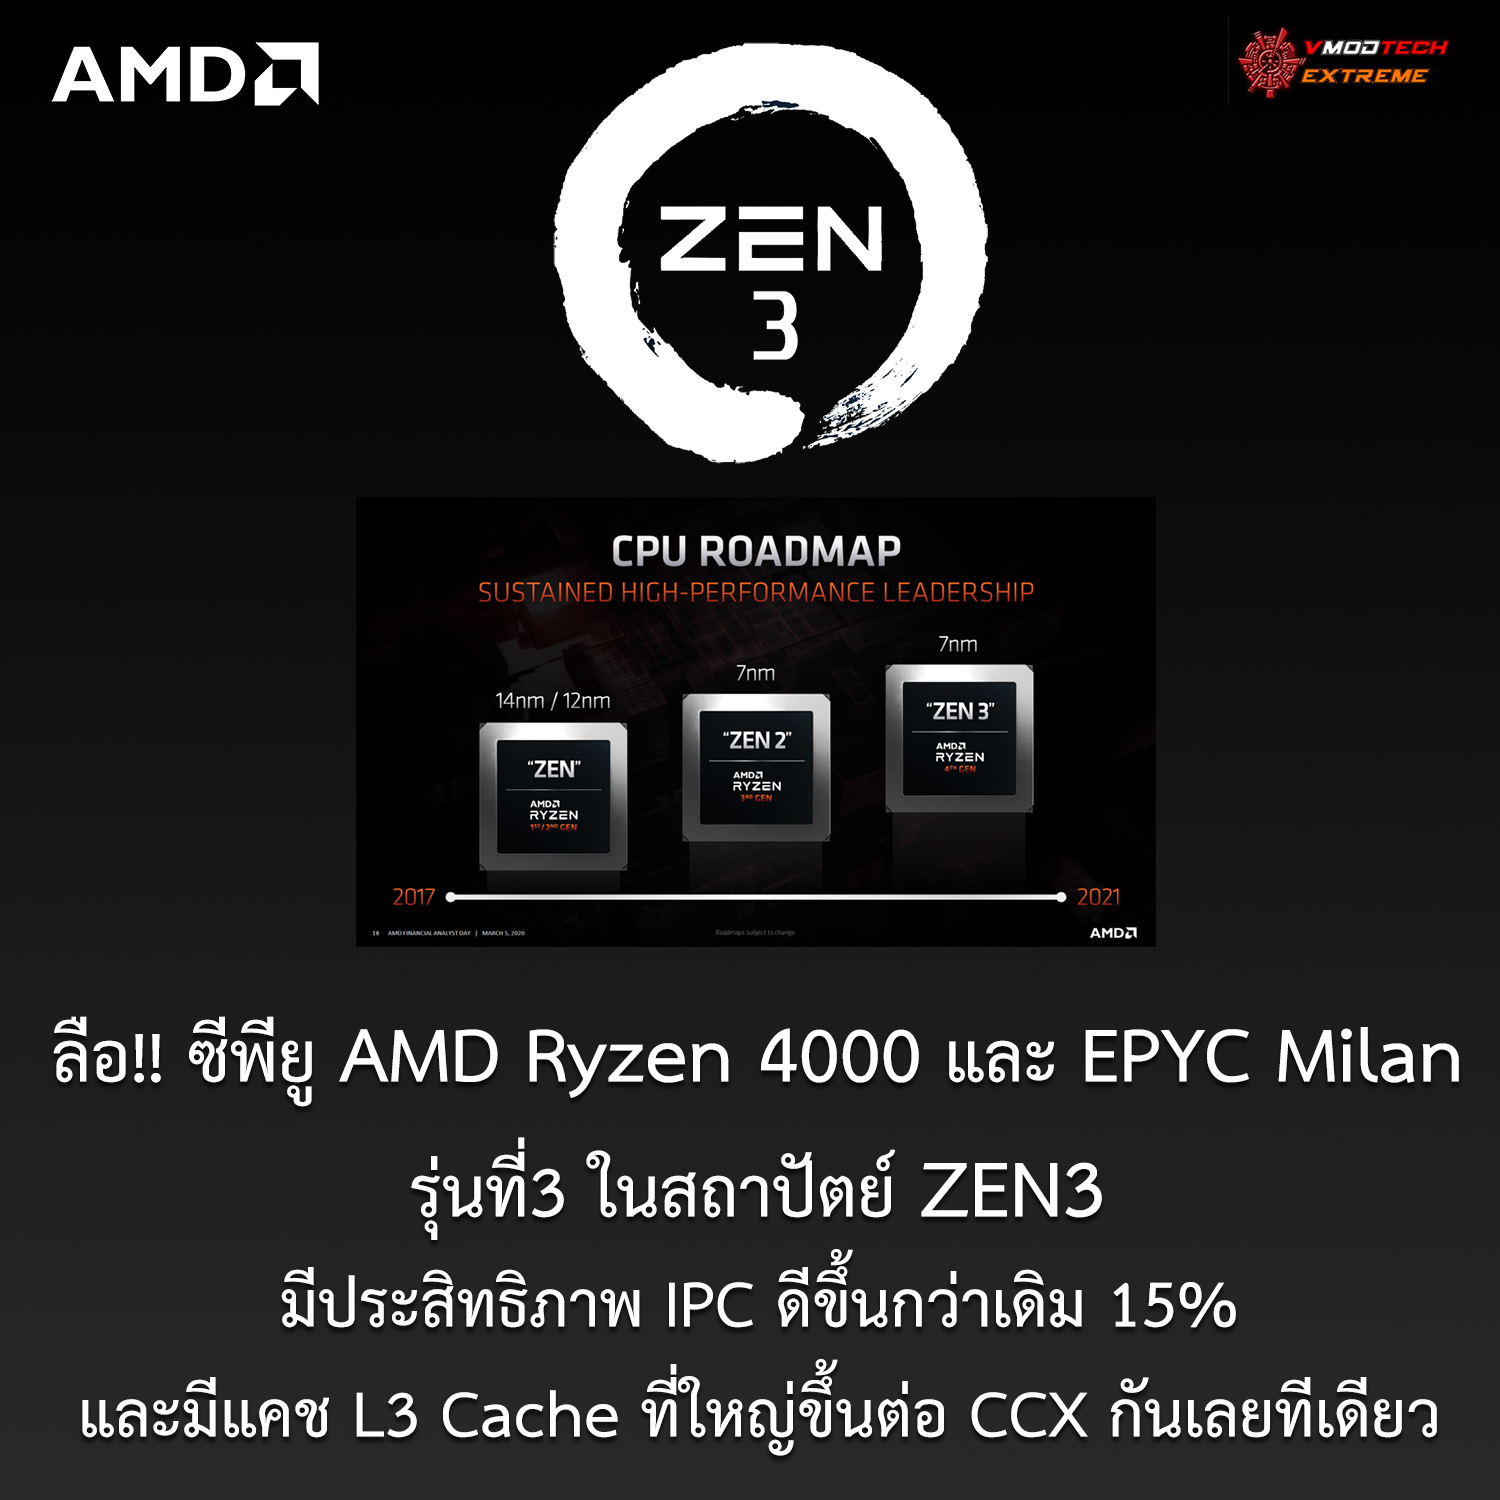 ลือ!! ซีพียู AMD Ryzen 4000 และ EPYC Milan ในสถาปัตย์ ZEN3 ประสิทธิภาพ IPC ดีขึ้นกว่าเดิม 15% และมีแคช L3 Cache ที่ใหญ่ขึ้นต่อ CCX กันเลยทีเดียว 